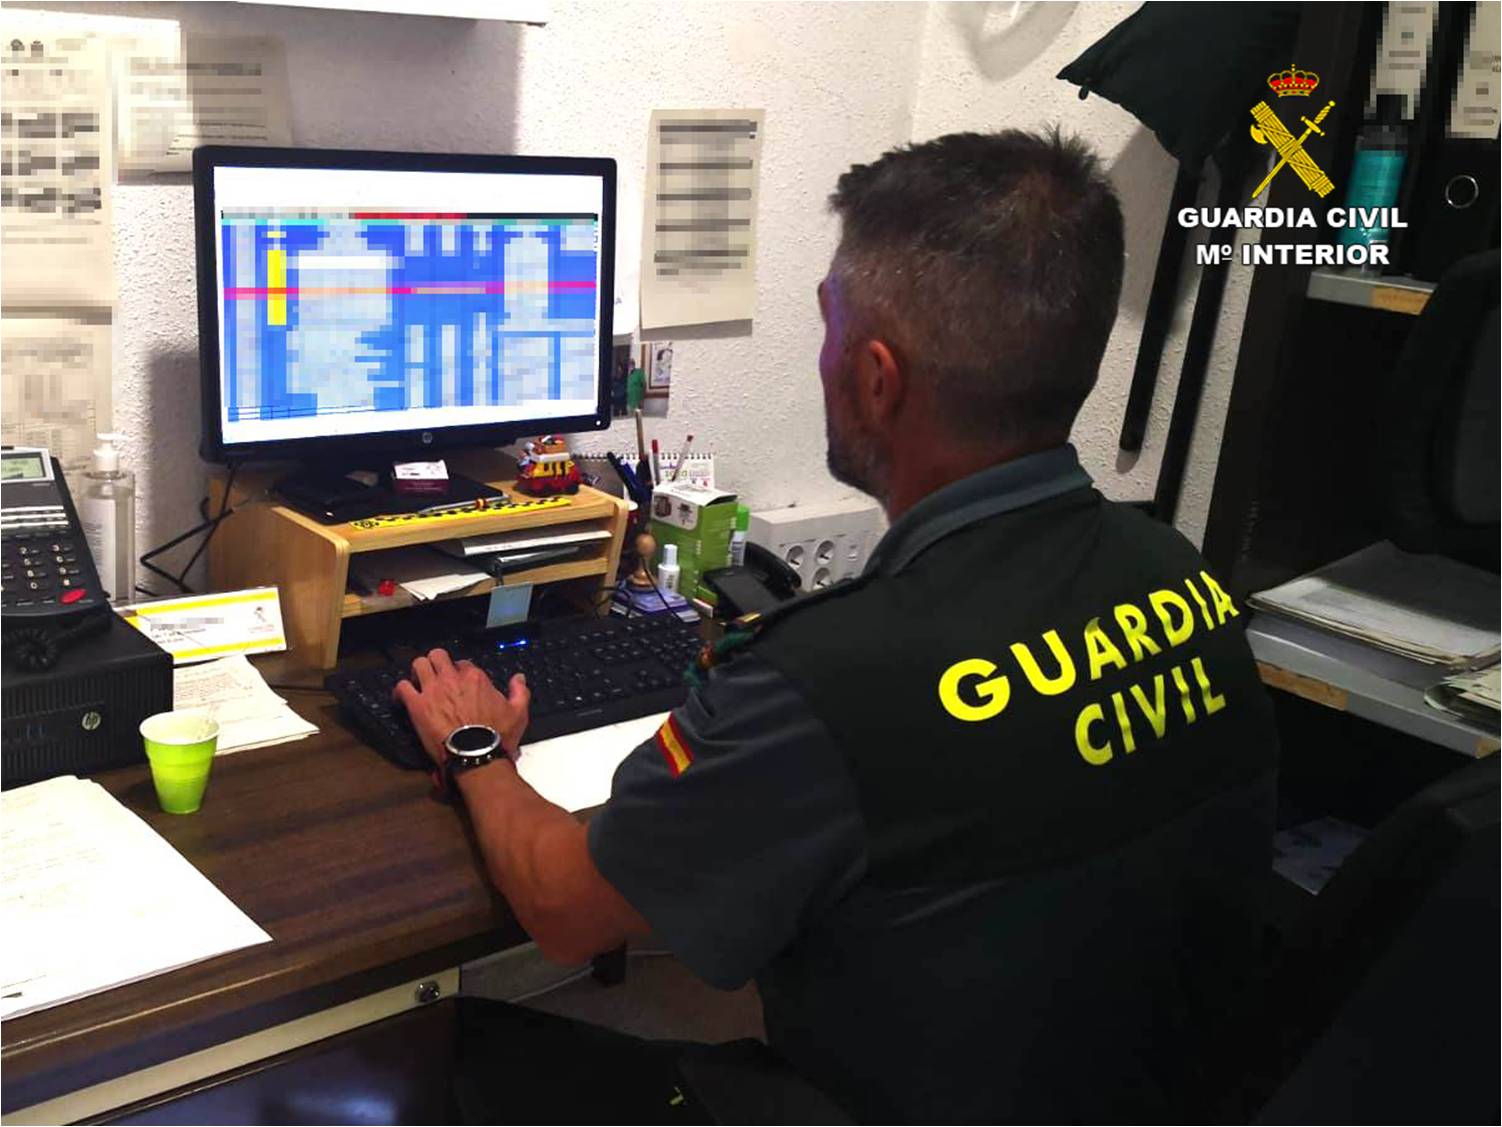 La Guardia Civil detiene a 2 hombres de 66 y 29 años en la provincia de Alicante por estafar más de 70.000 euros a través internet